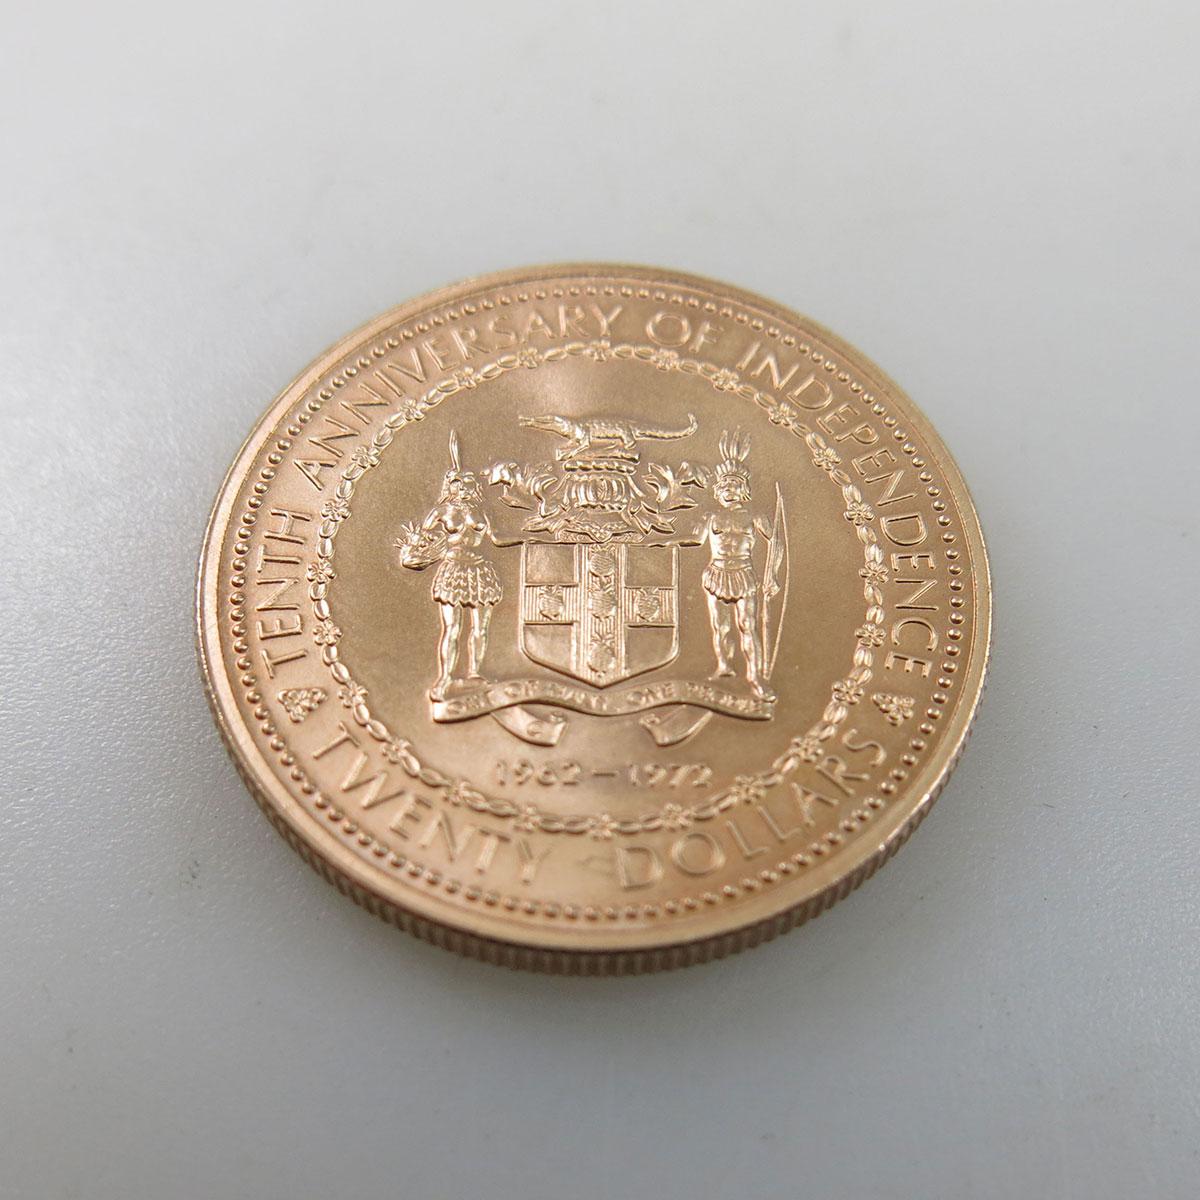 Jamaican 1972 $20 Gold Coin .500 grade gold